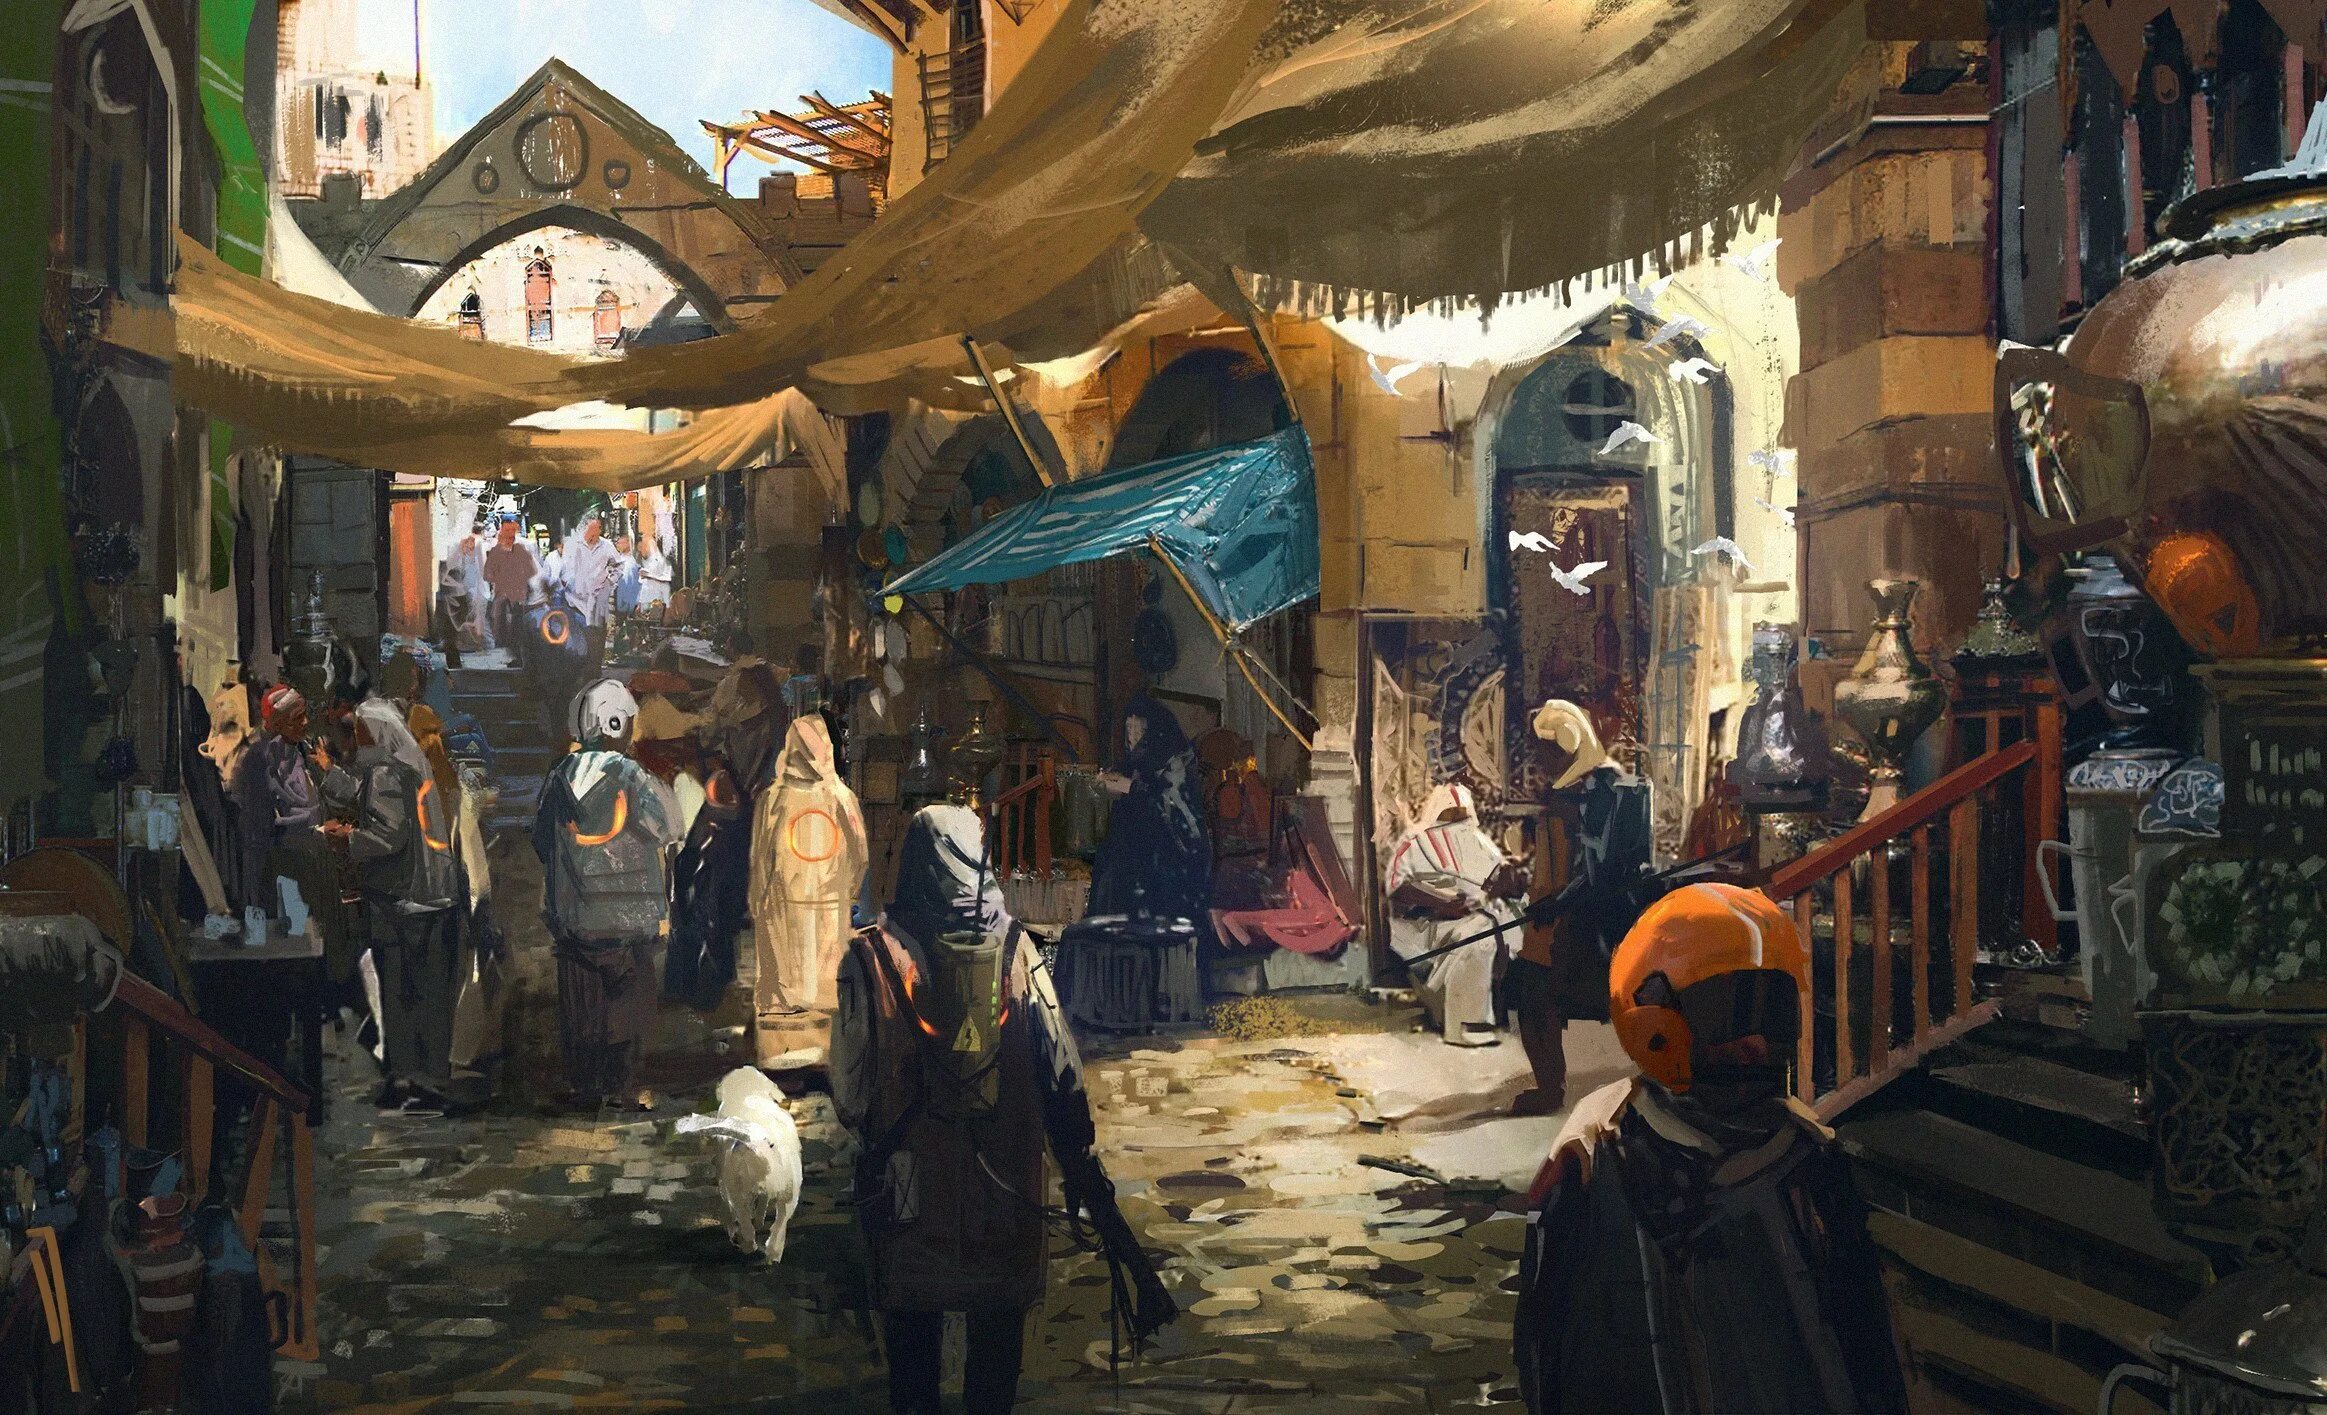 Фон базара. Средневековый торговый город концепт арт. Фэнтези арт рынок шатров. Арбаский торговец концепт арт. Средневековый рынок Италия.